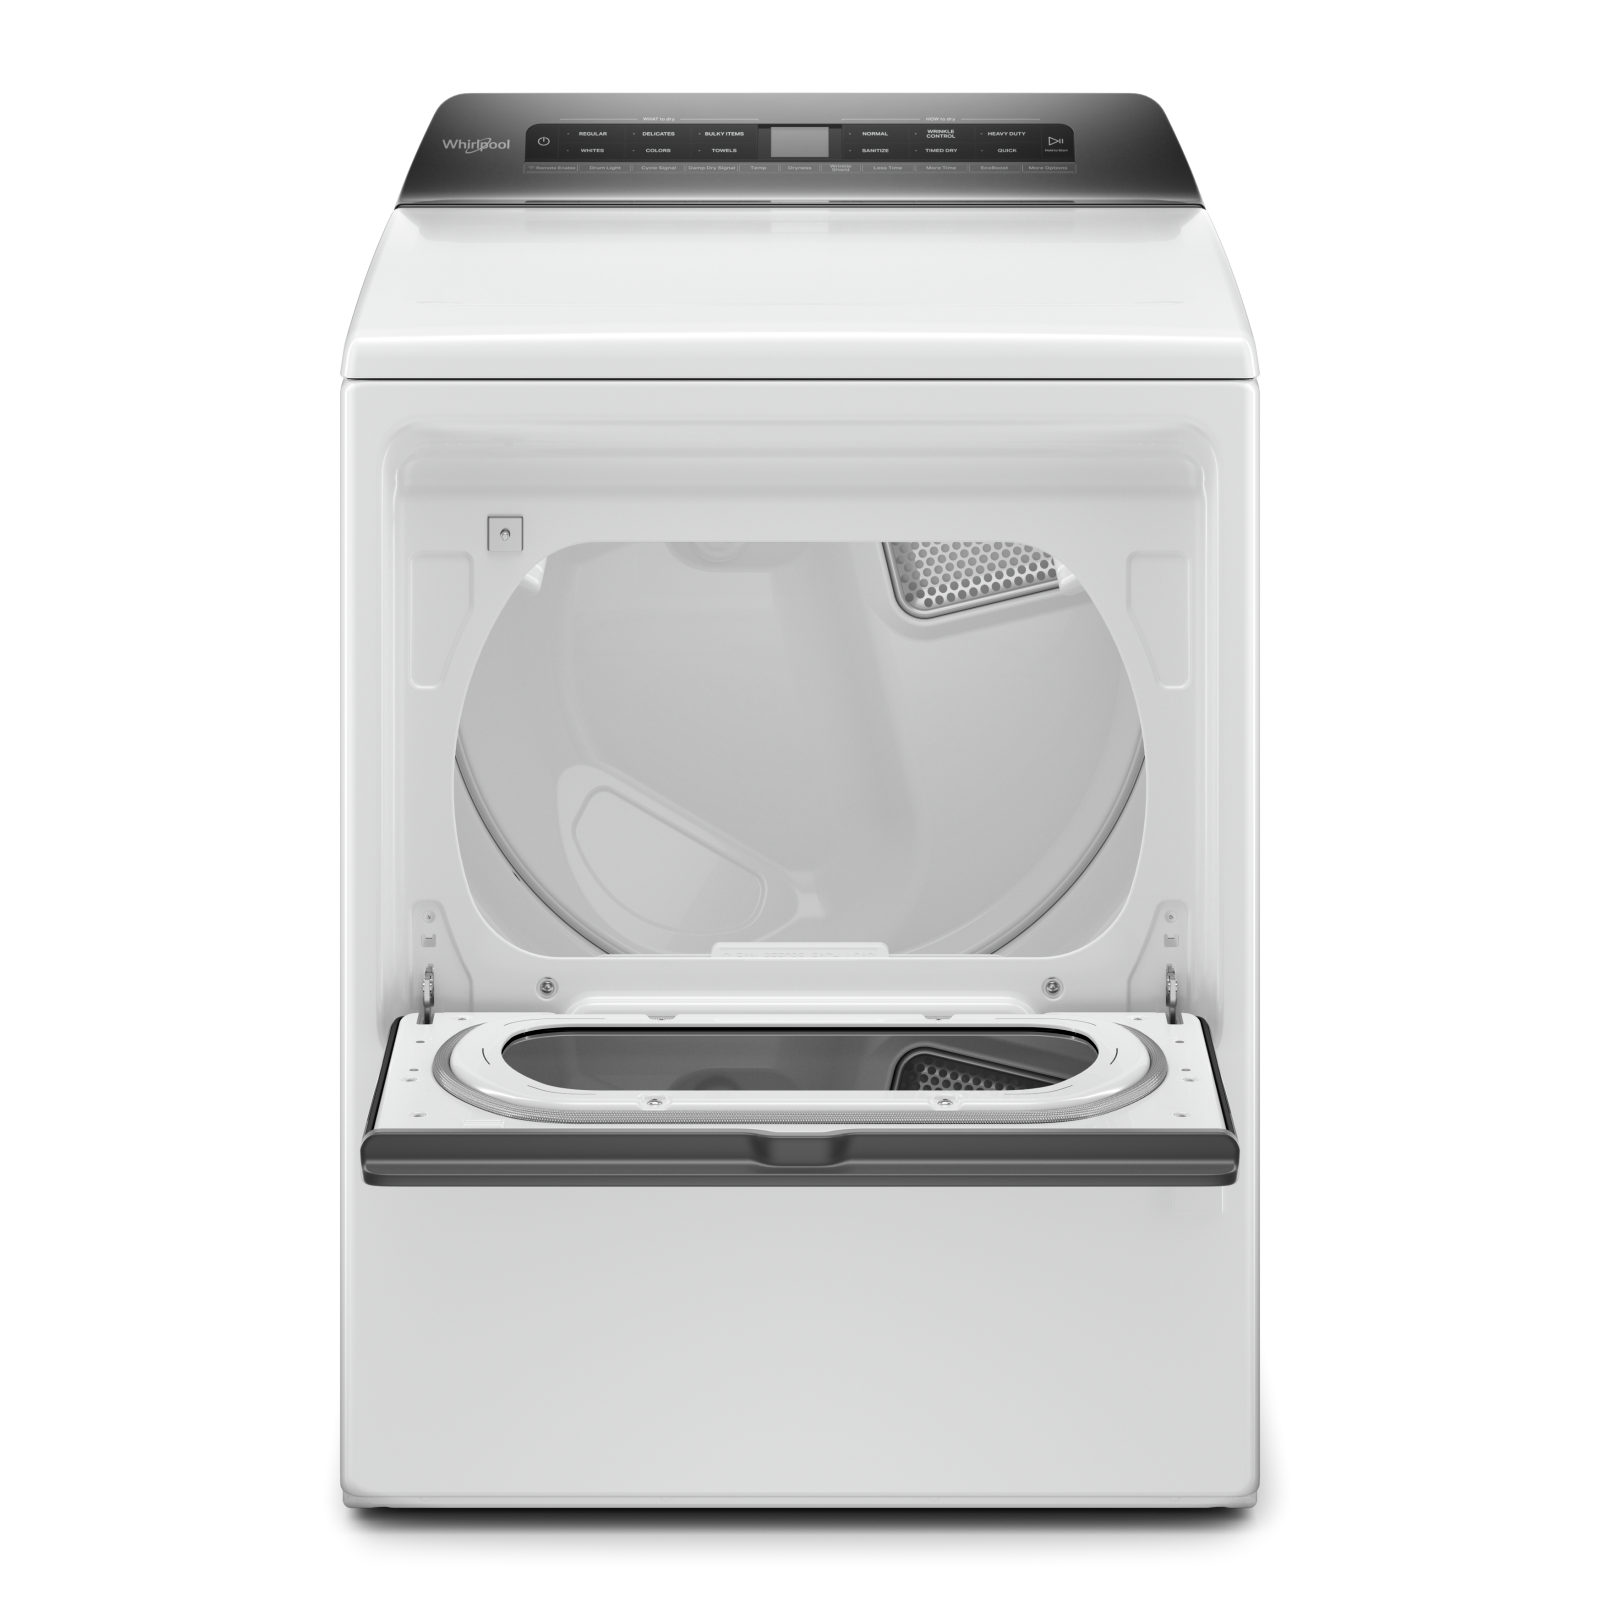 Whirlpool - 7.4 cu. Ft  Gas Dryer in White - WGD6120HW